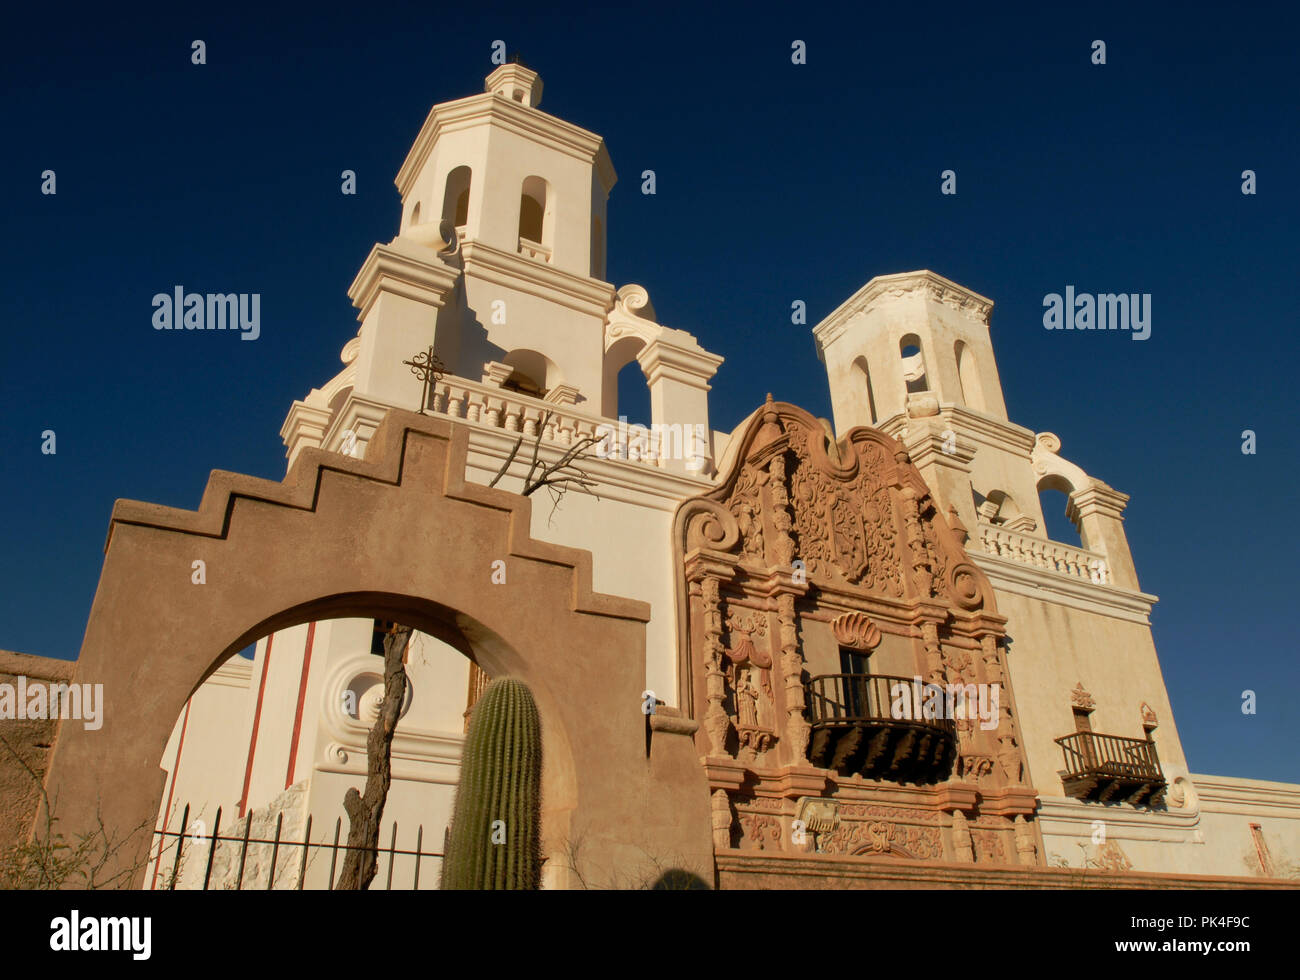 De style colonial espagnol de la Mission San Xavier del Bac, construit entre 1783 et 1797, se dresse sur la nation Tohono O'odham avec réservation gratuite au sud de Tuscon, Arizona. Banque D'Images